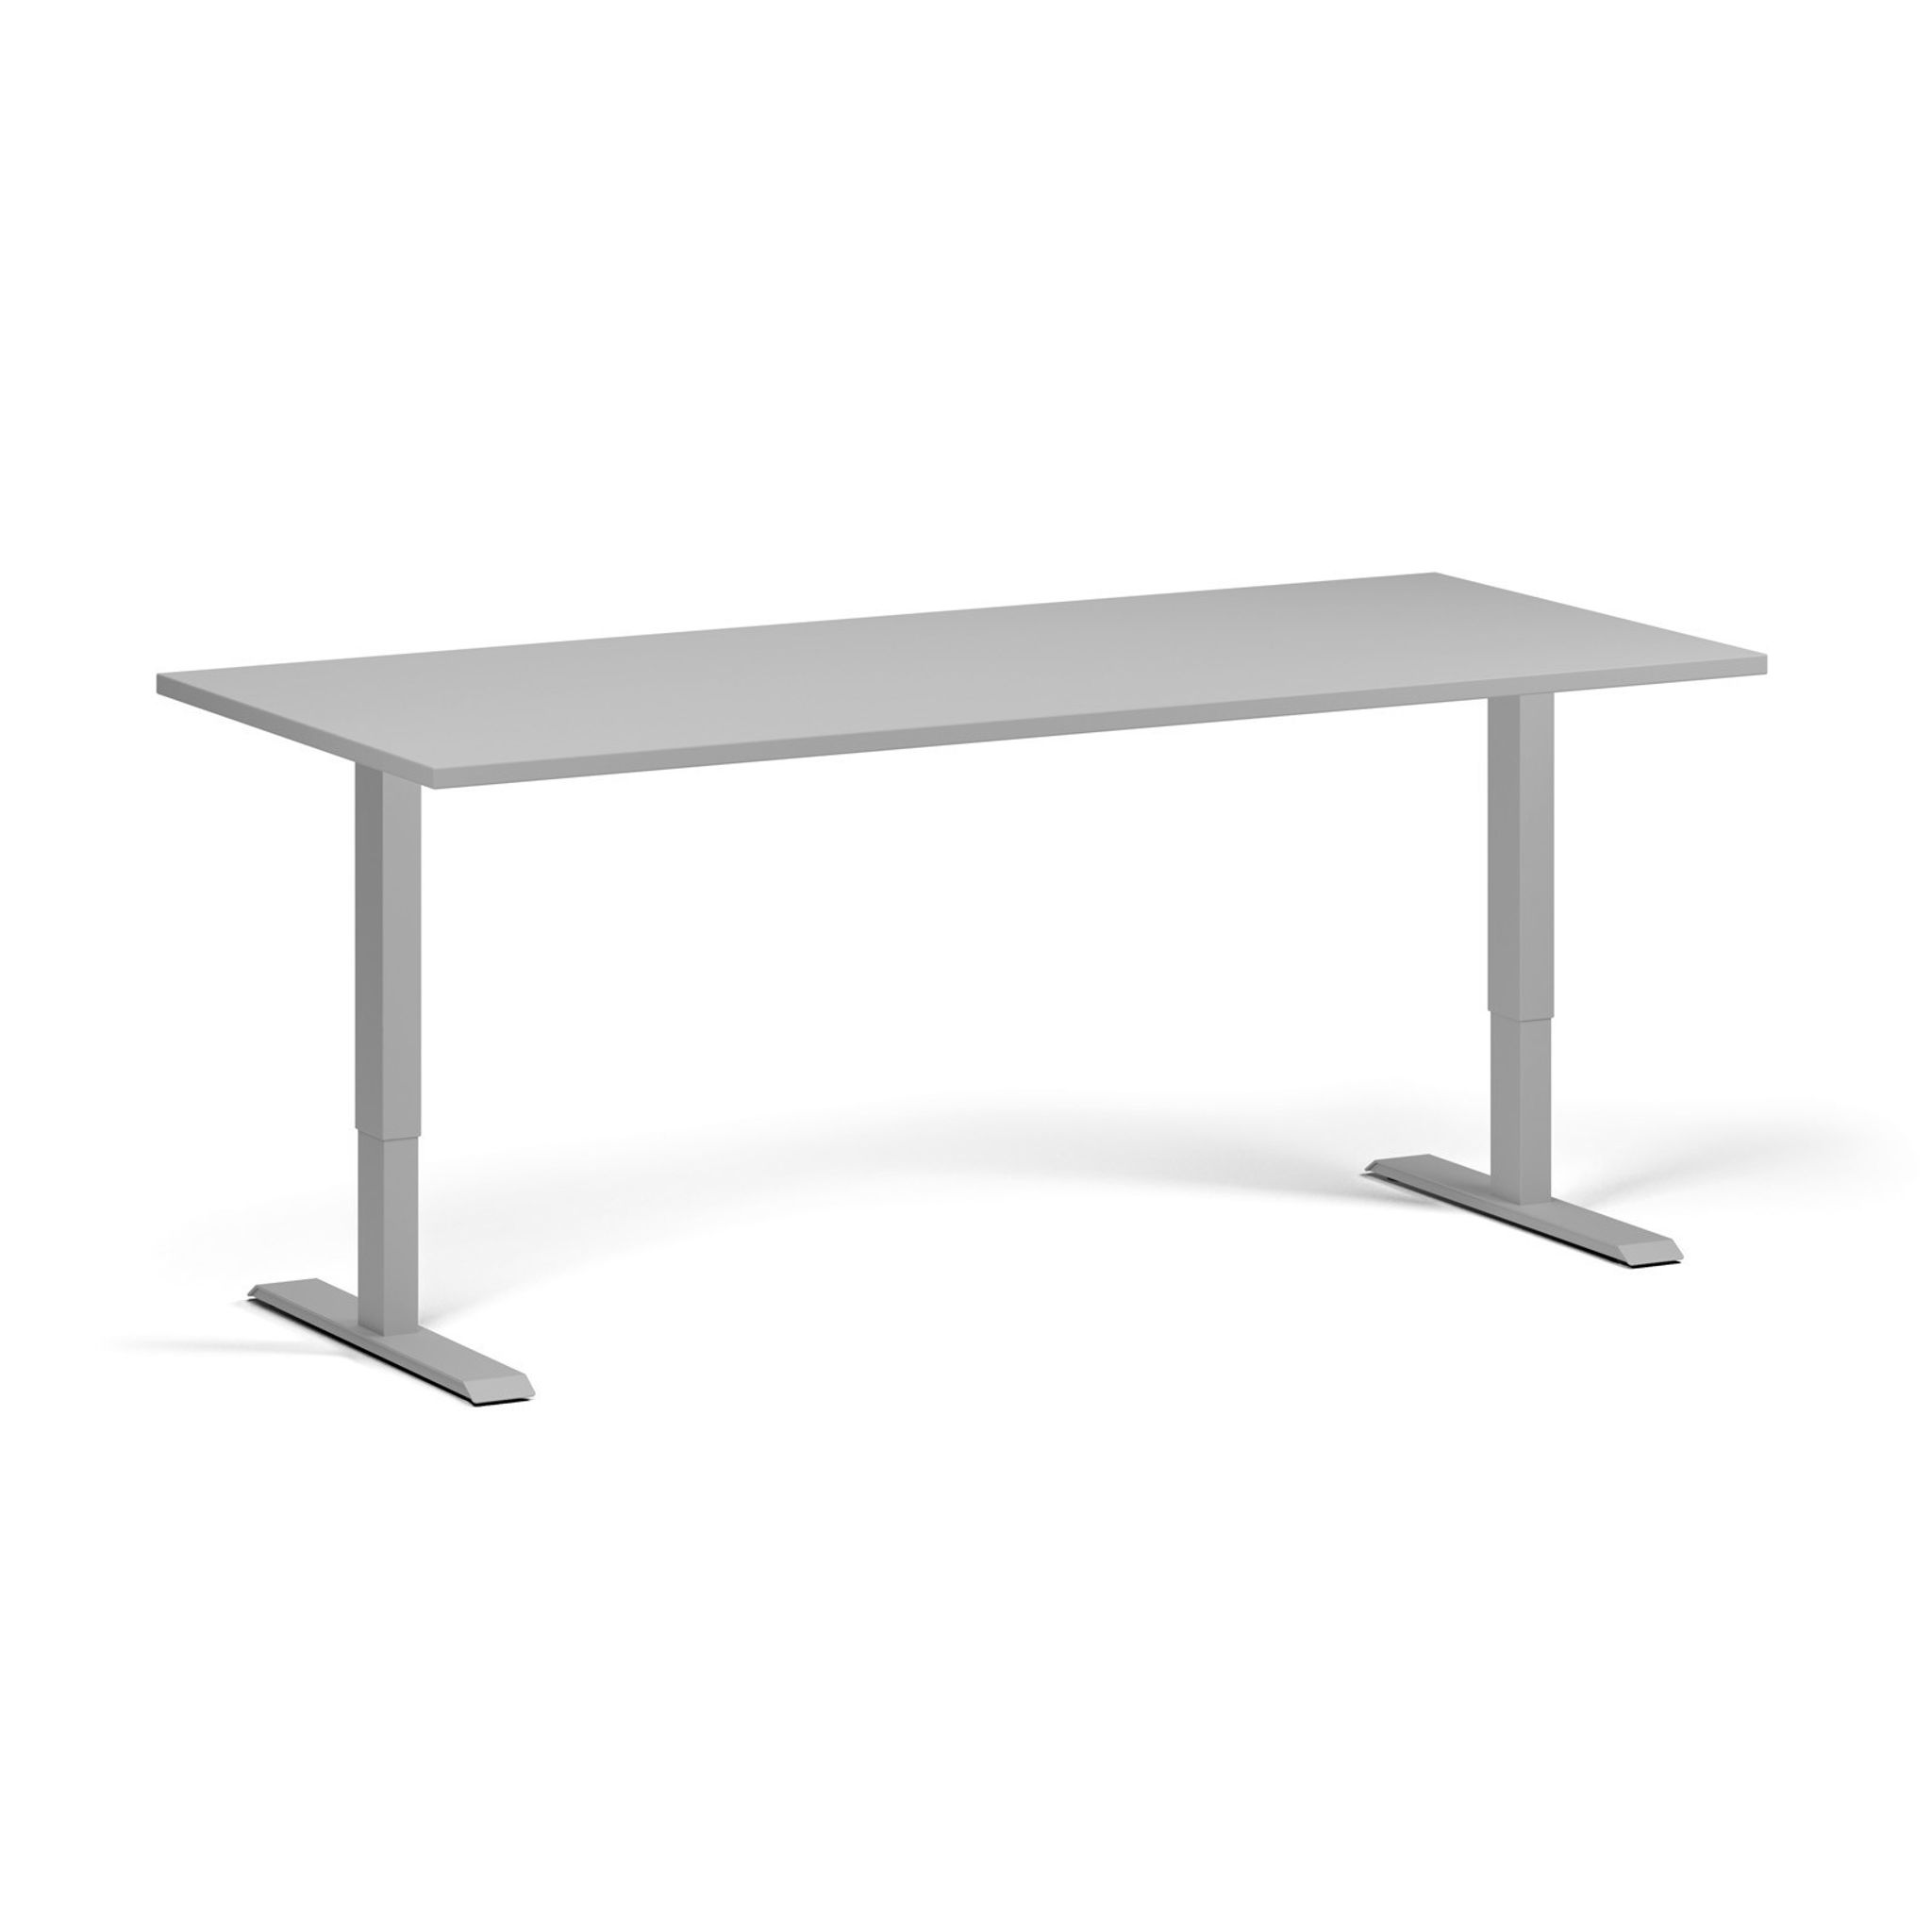 Výškově nastavitelný stůl, 1 motor, 745 - 1235 mm, deska 1800 x 800 mm, šedá podnož, šedá